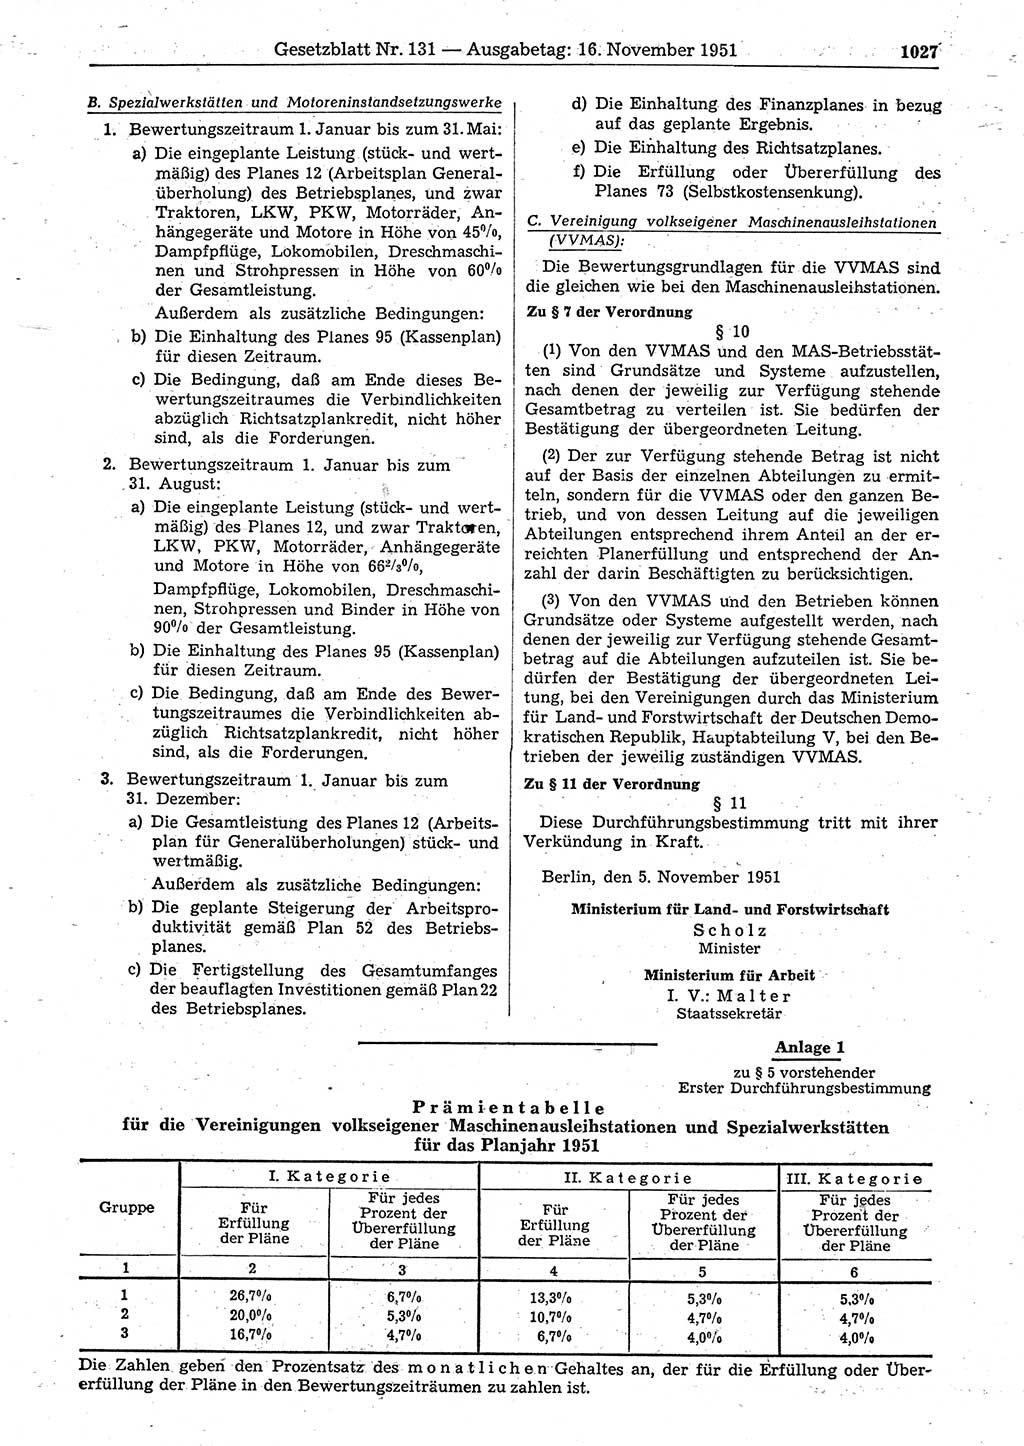 Gesetzblatt (GBl.) der Deutschen Demokratischen Republik (DDR) 1951, Seite 1027 (GBl. DDR 1951, S. 1027)